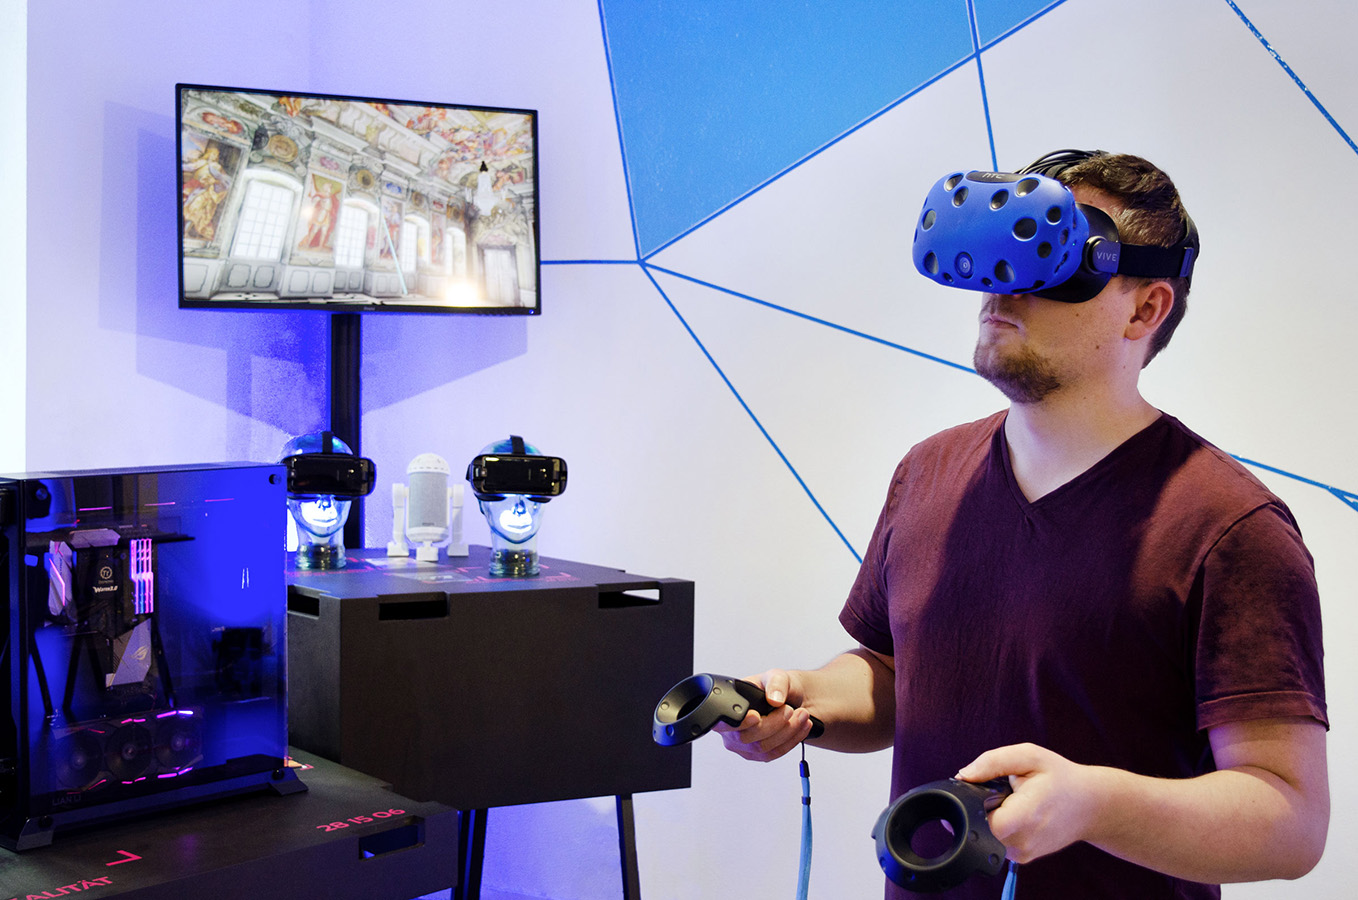 Rechts ist ein Mann abgebildet der eine Virtual Reality-Brille trägt und in der Hand je einen Controler hält. Im Hintergrund sieht man auf einem Bildschirm was der Mann durch die Brille gerade sieht.